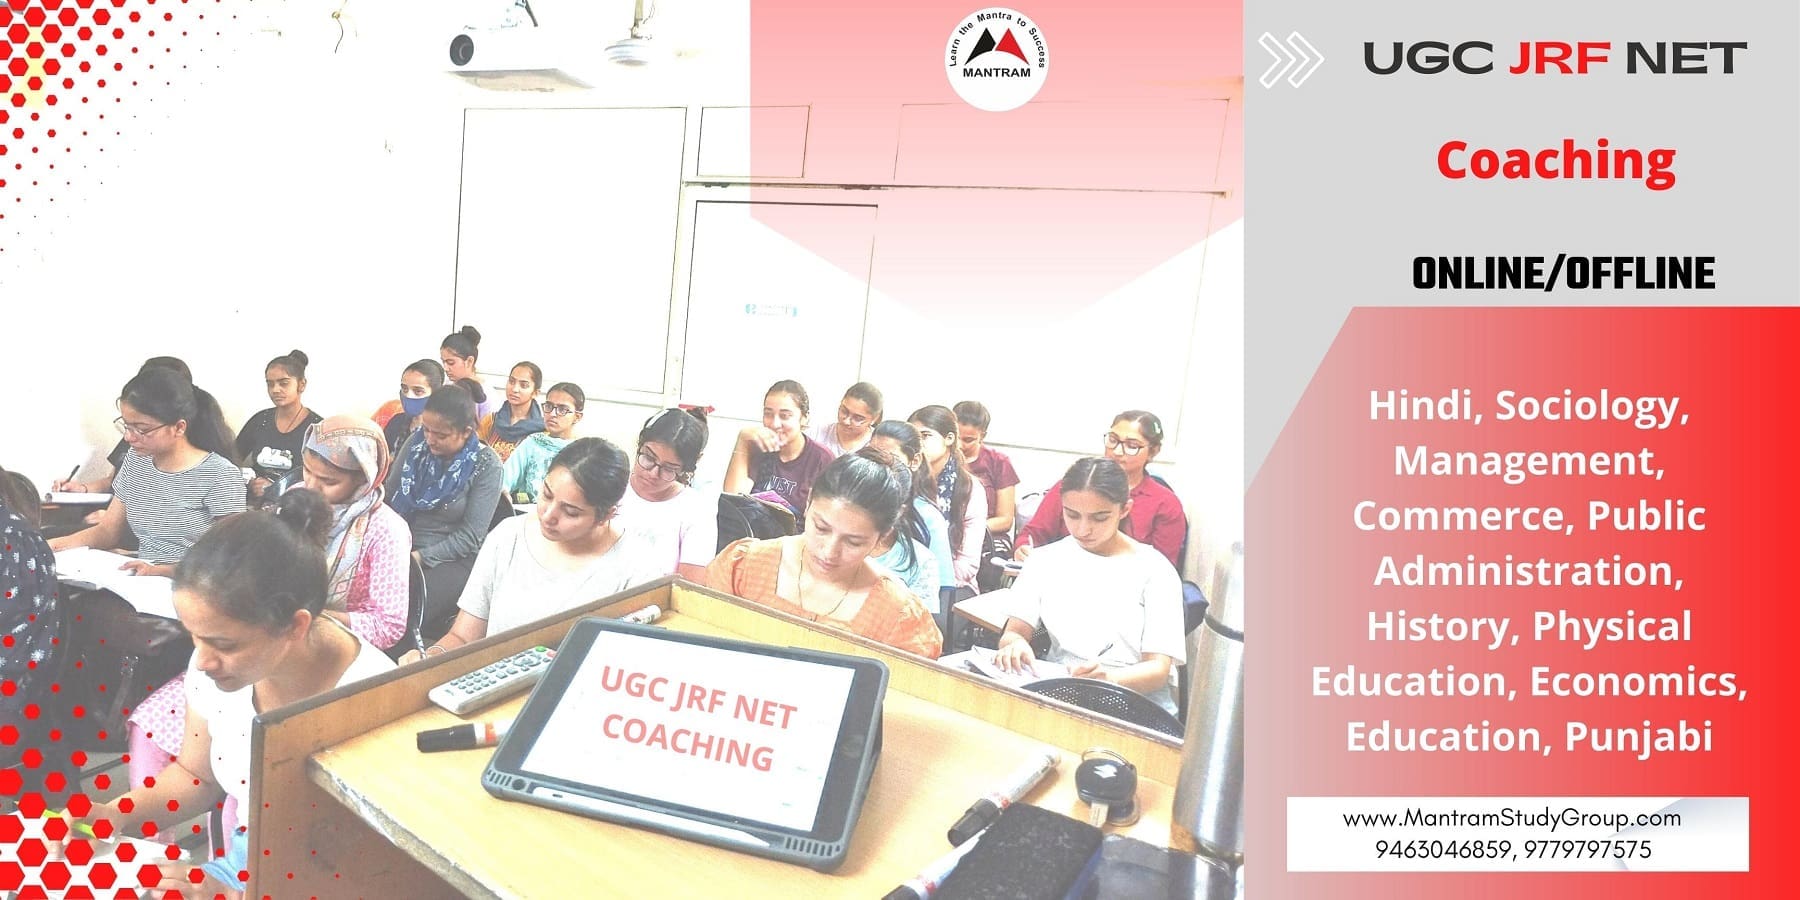 UGC JRF NET Coaching in Bathinda Punjab